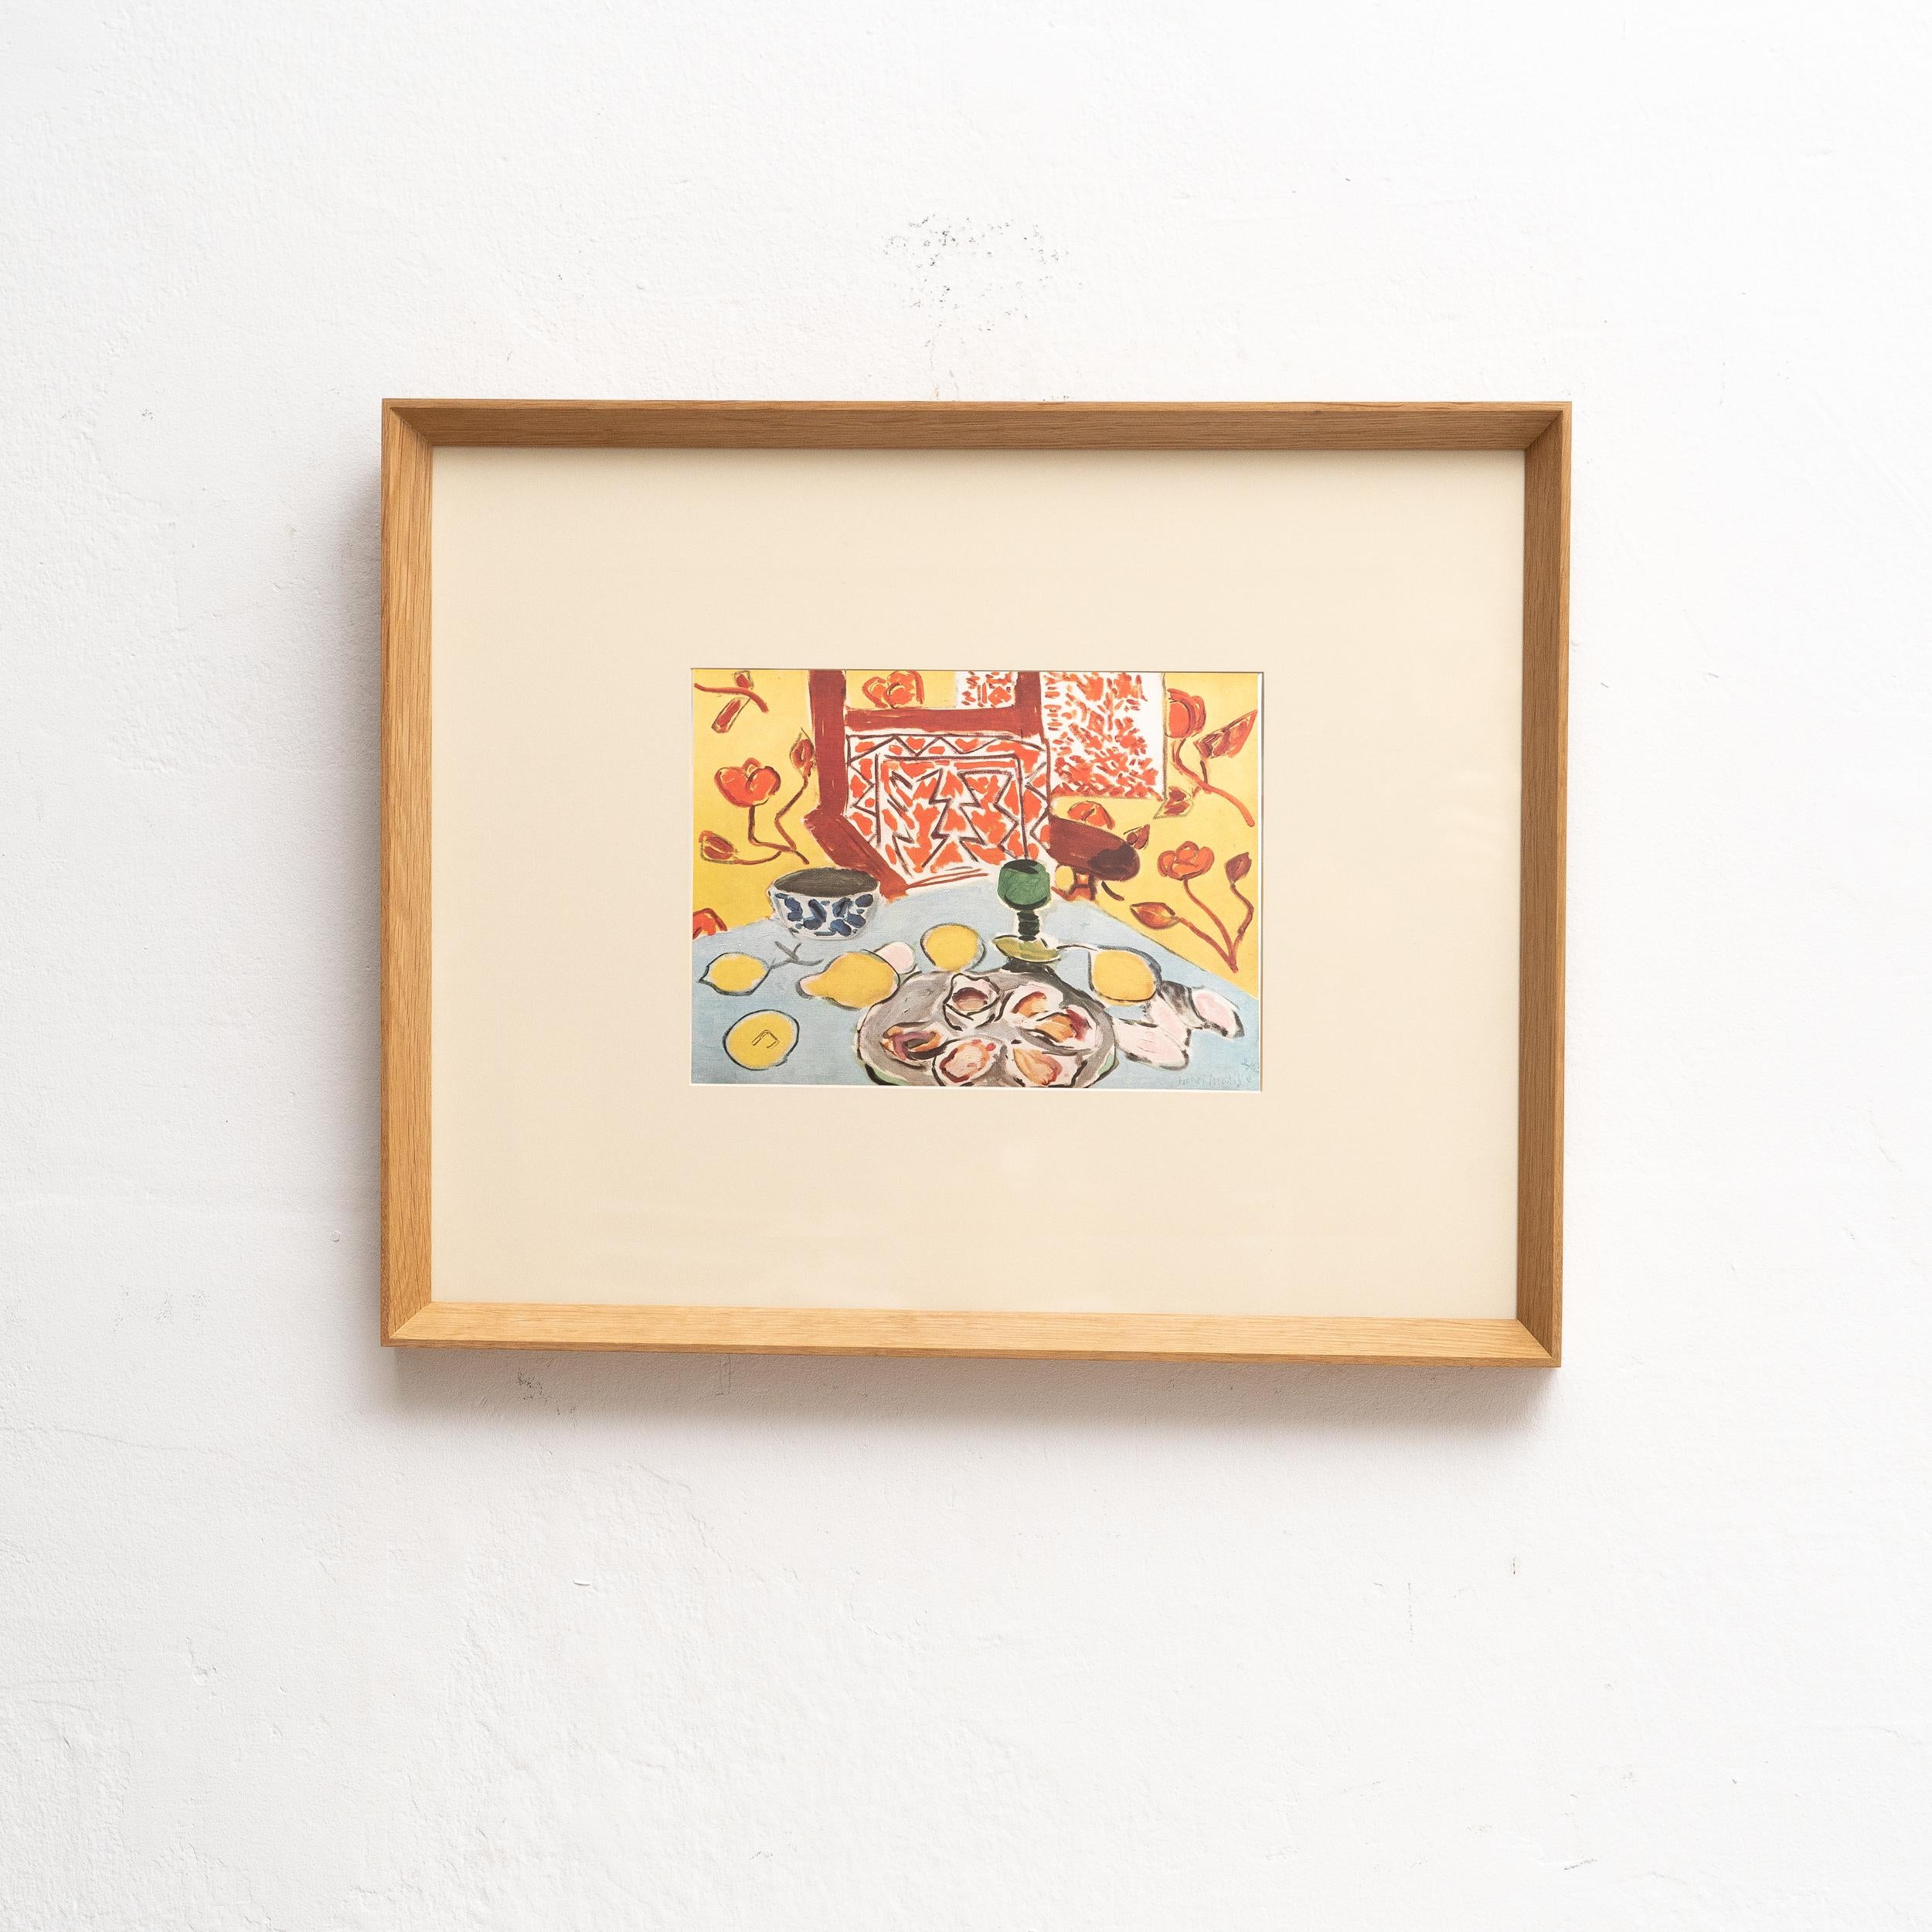 Plongez dans l'éclat intemporel d'Henri Matisse avec cette extraordinaire lithographie en couleurs, éditée de manière experte par les Editions du Chene à Paris, France, en 1943. Dans un superbe cadre en bois massif, mesurant 40,5 cm de haut et 51 cm